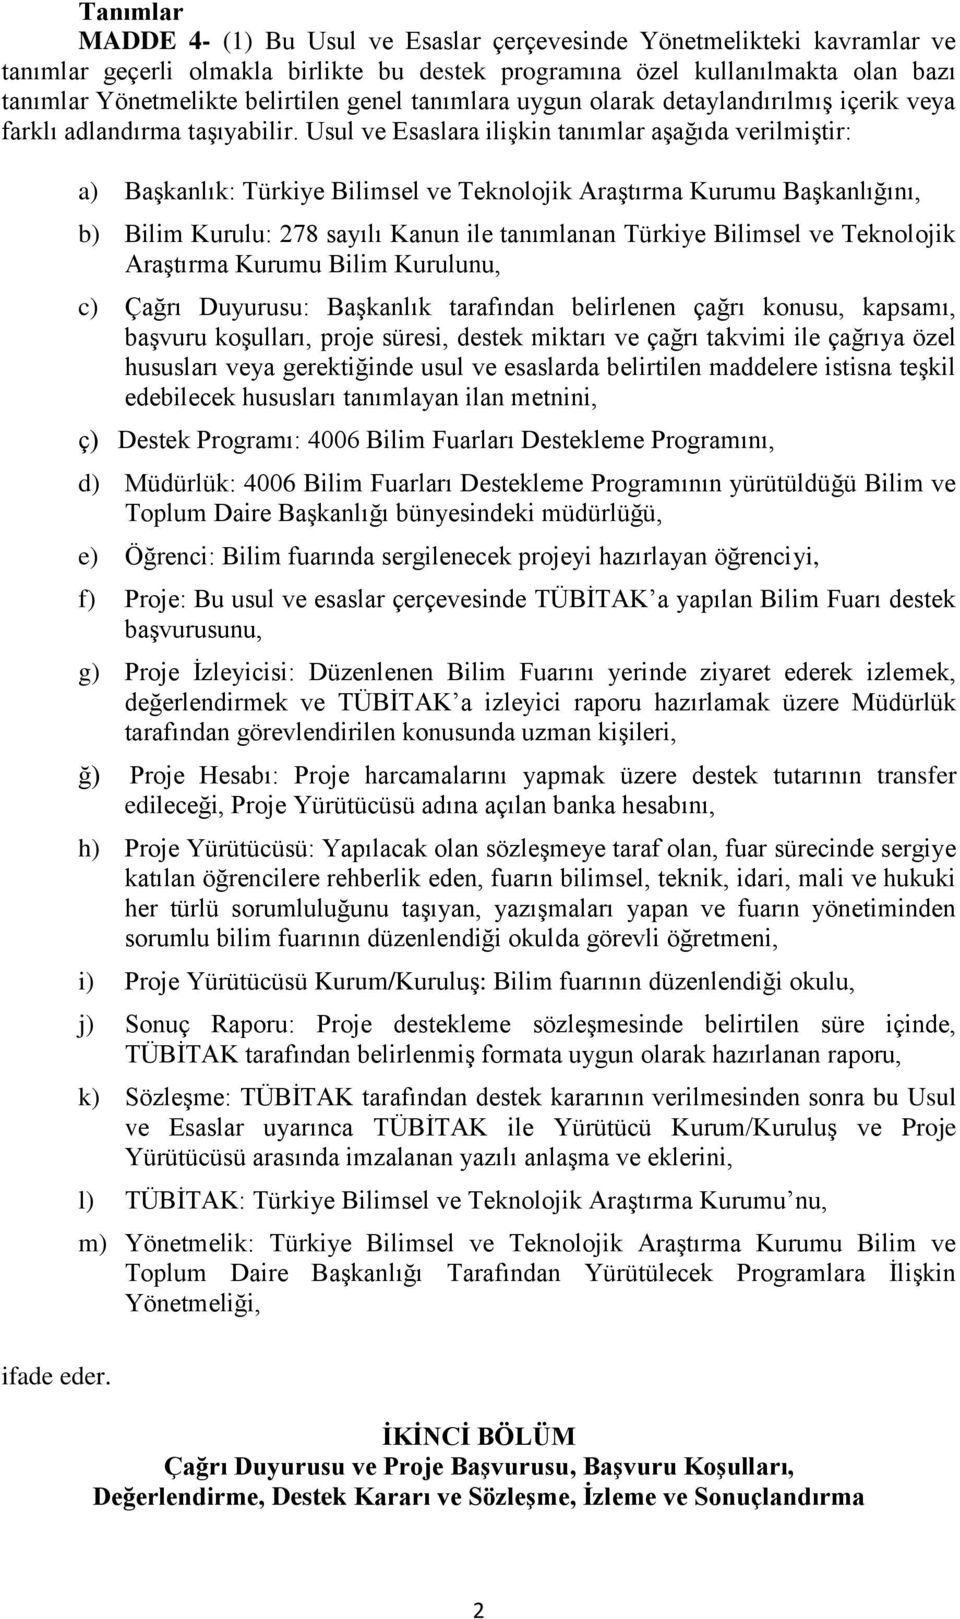 a) Başkanlık: Türkiye Bilimsel ve Teknolojik Araştırma Kurumu Başkanlığını, b) Bilim Kurulu: 278 sayılı Kanun ile tanımlanan Türkiye Bilimsel ve Teknolojik Araştırma Kurumu Bilim Kurulunu, c) Çağrı